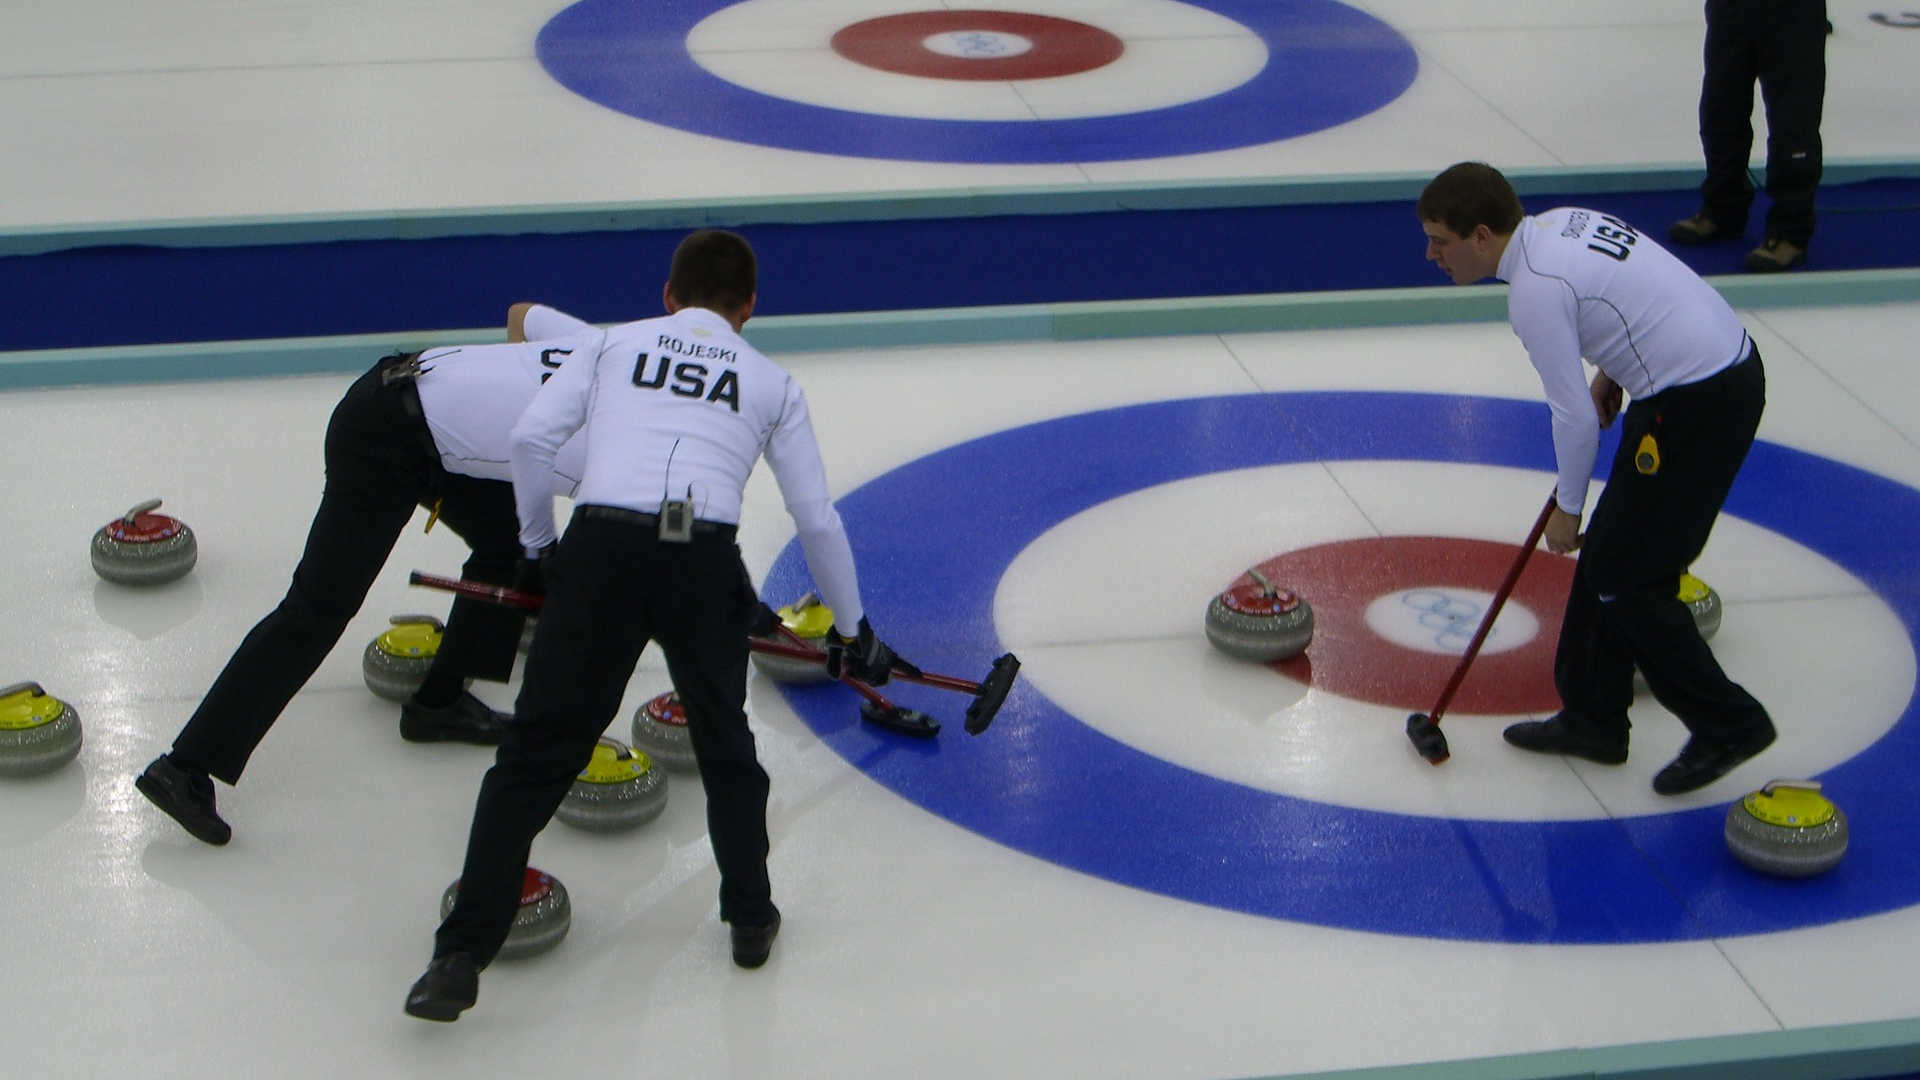 Drei Curling-Spieler stehen auf dem Eis beim Zielpunkt. Sie wischen mit ihren Besen die Eisbahn, damit ihr Curling-Stein an den anderen Steinen vorbei näher an das Ziel gelangt.